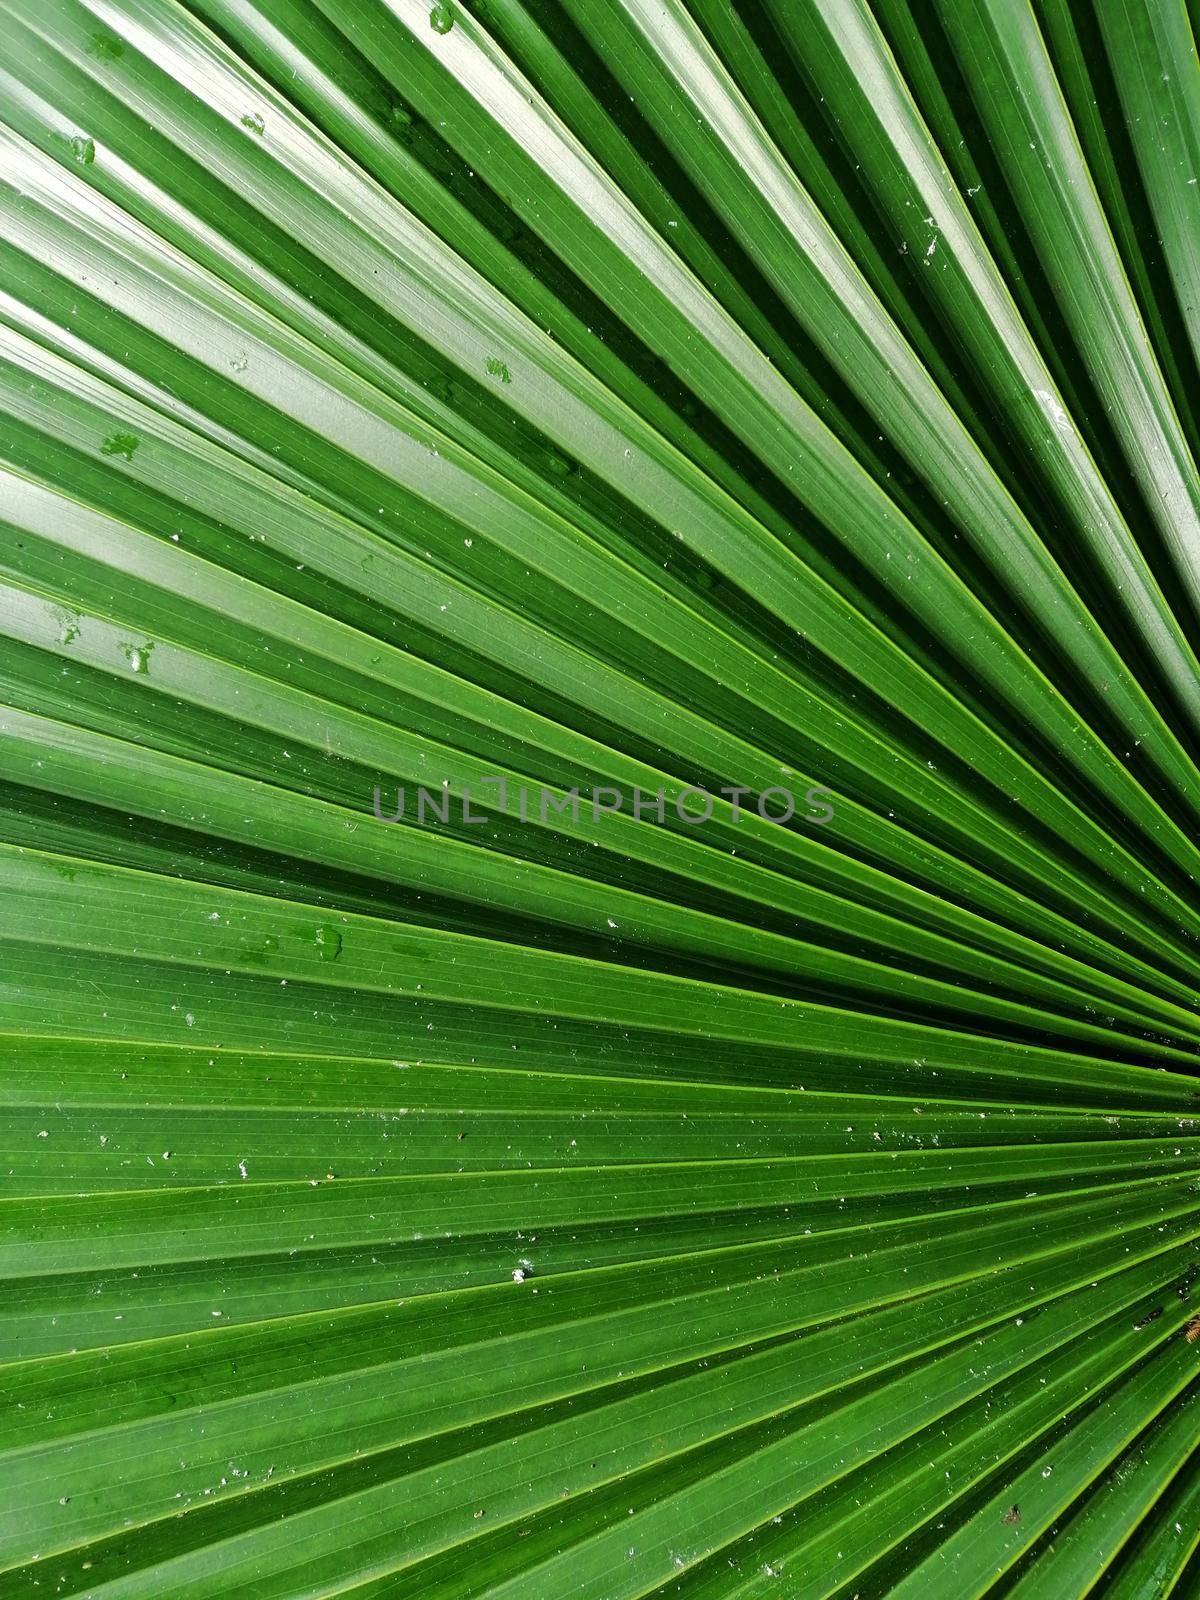 green leaf, botanical lush foliage nature background